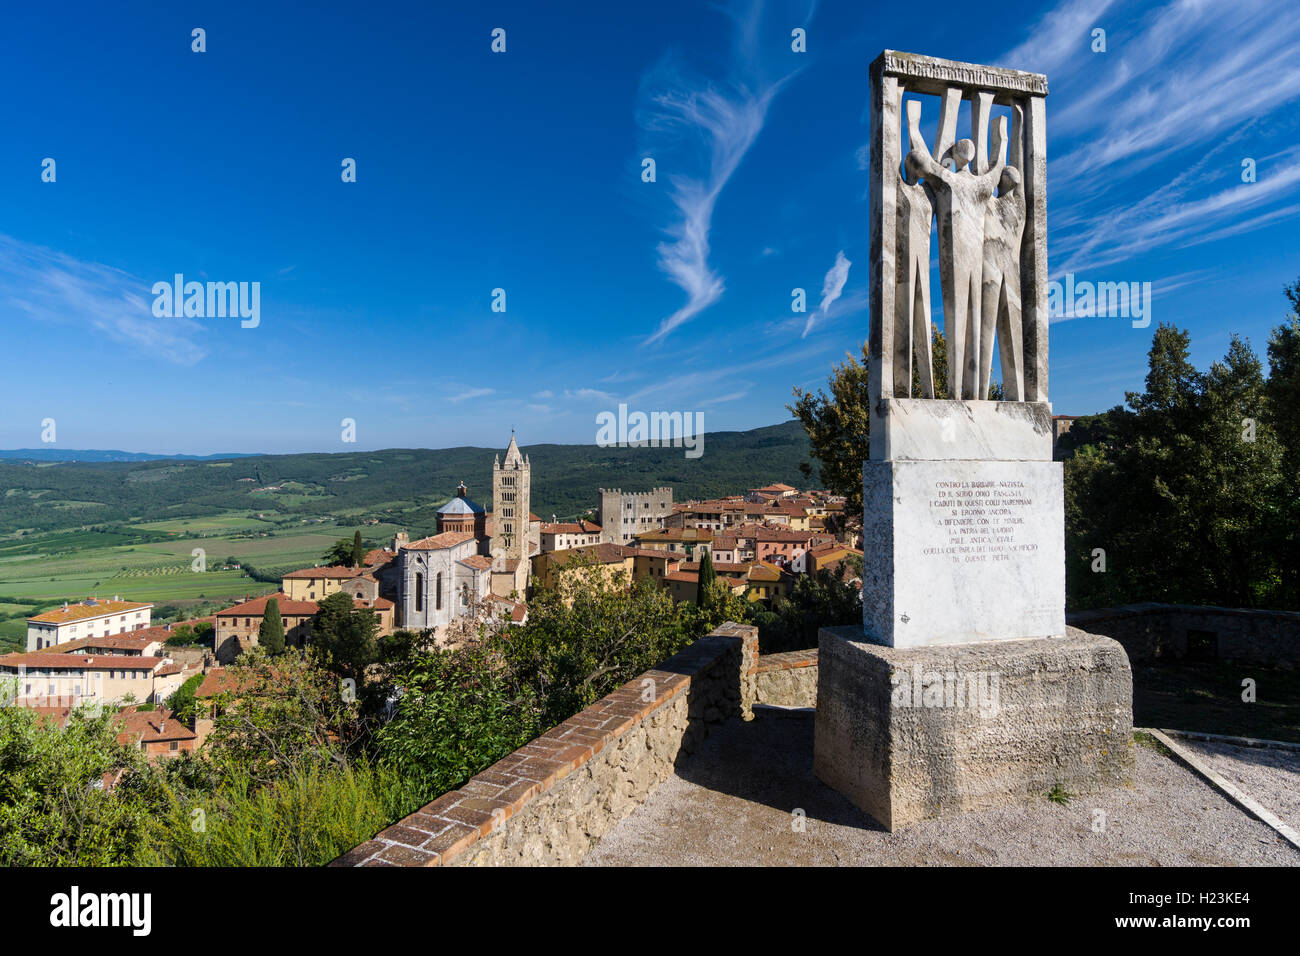 Un monumento contro il fascismo e il Nazismo sulla collina sopra la città, Massa Marittima, Toscana, Italia Foto Stock